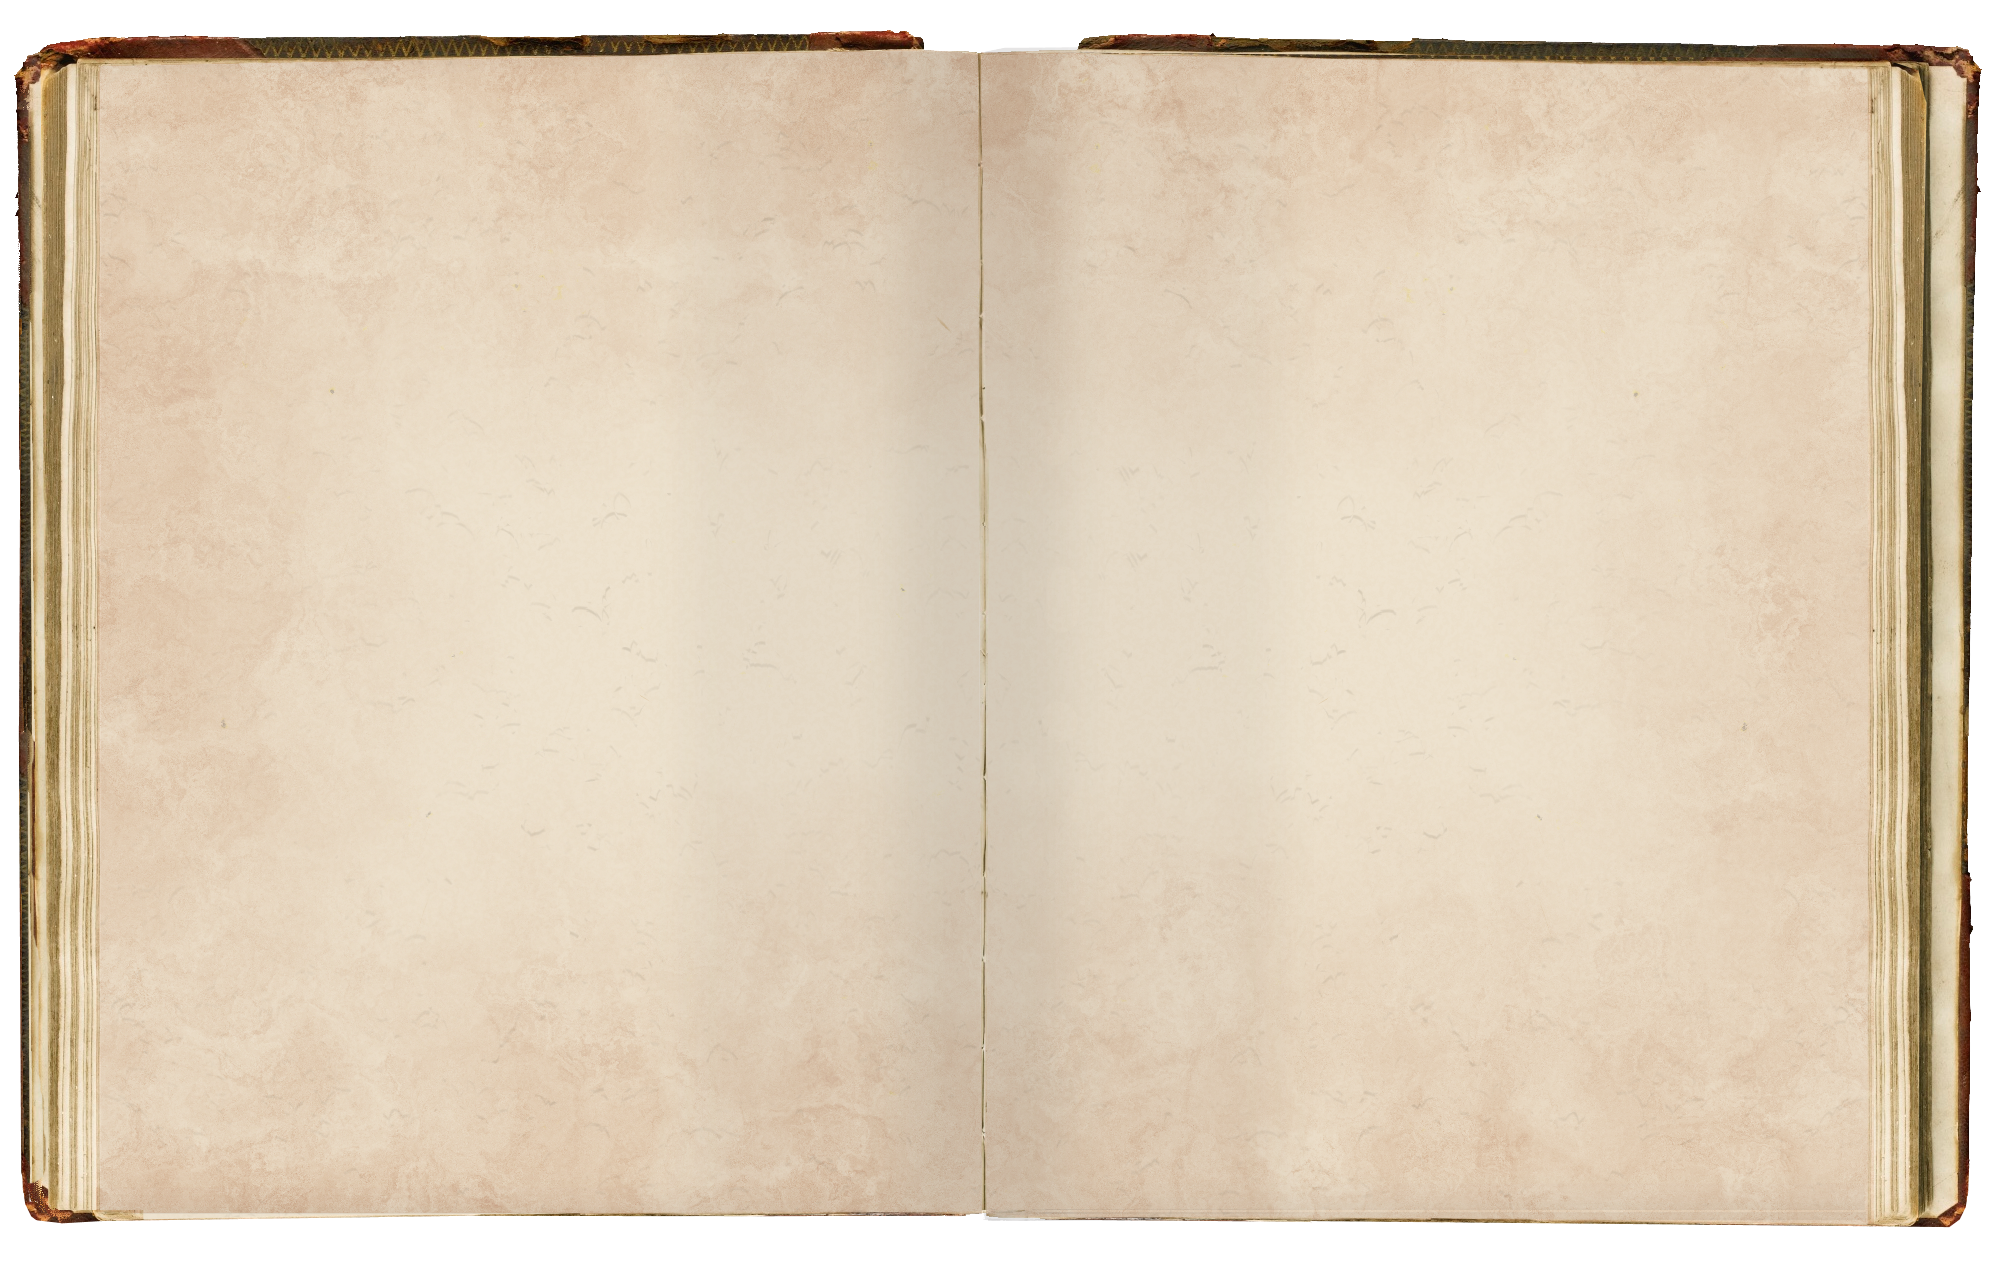 Книга page. Лист книги. Старый книжный лист. Пустые страницы фотоальбома. Пустая страница старой книги.